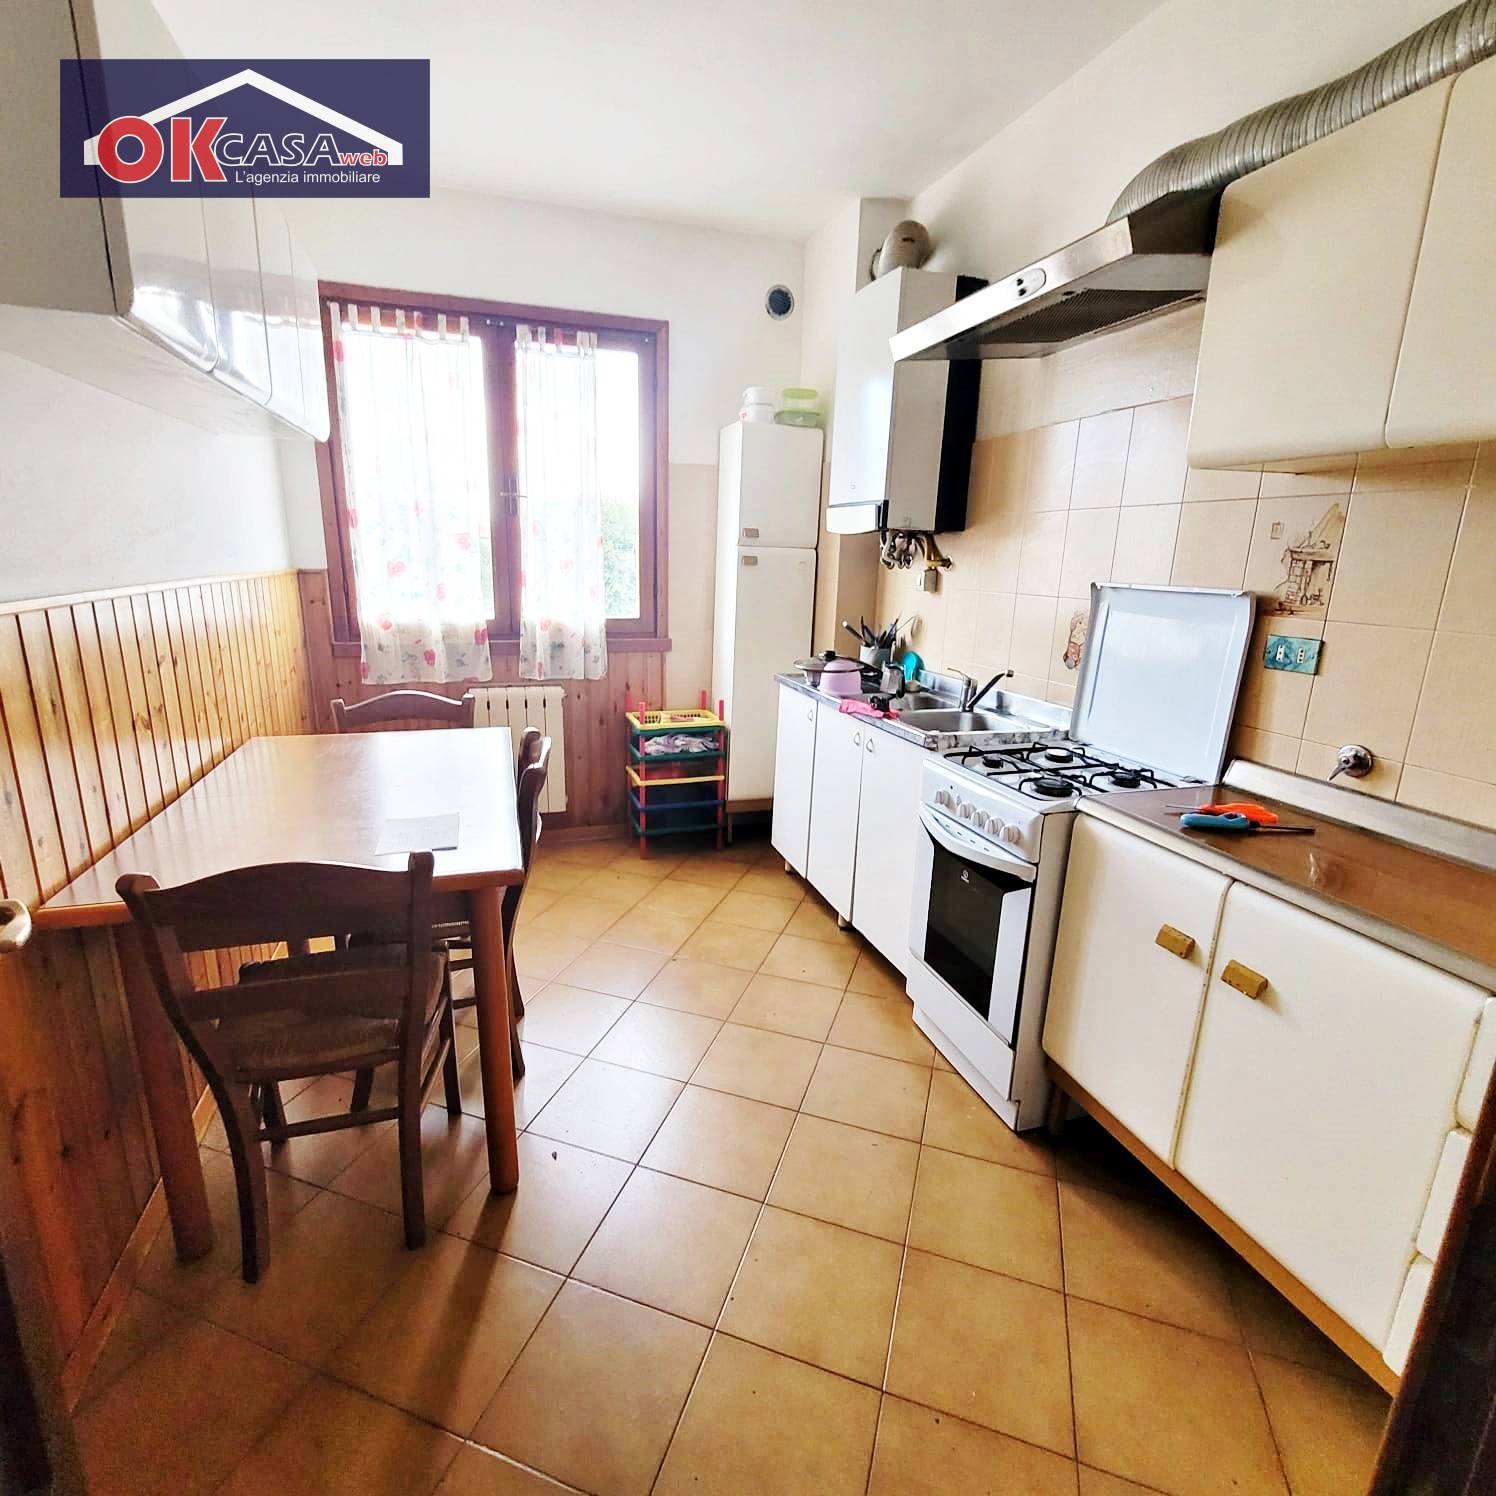 Appartamento in affitto a Ronchi dei Legionari, 5 locali, zona Zona: Vermegliano, prezzo € 750 | CambioCasa.it